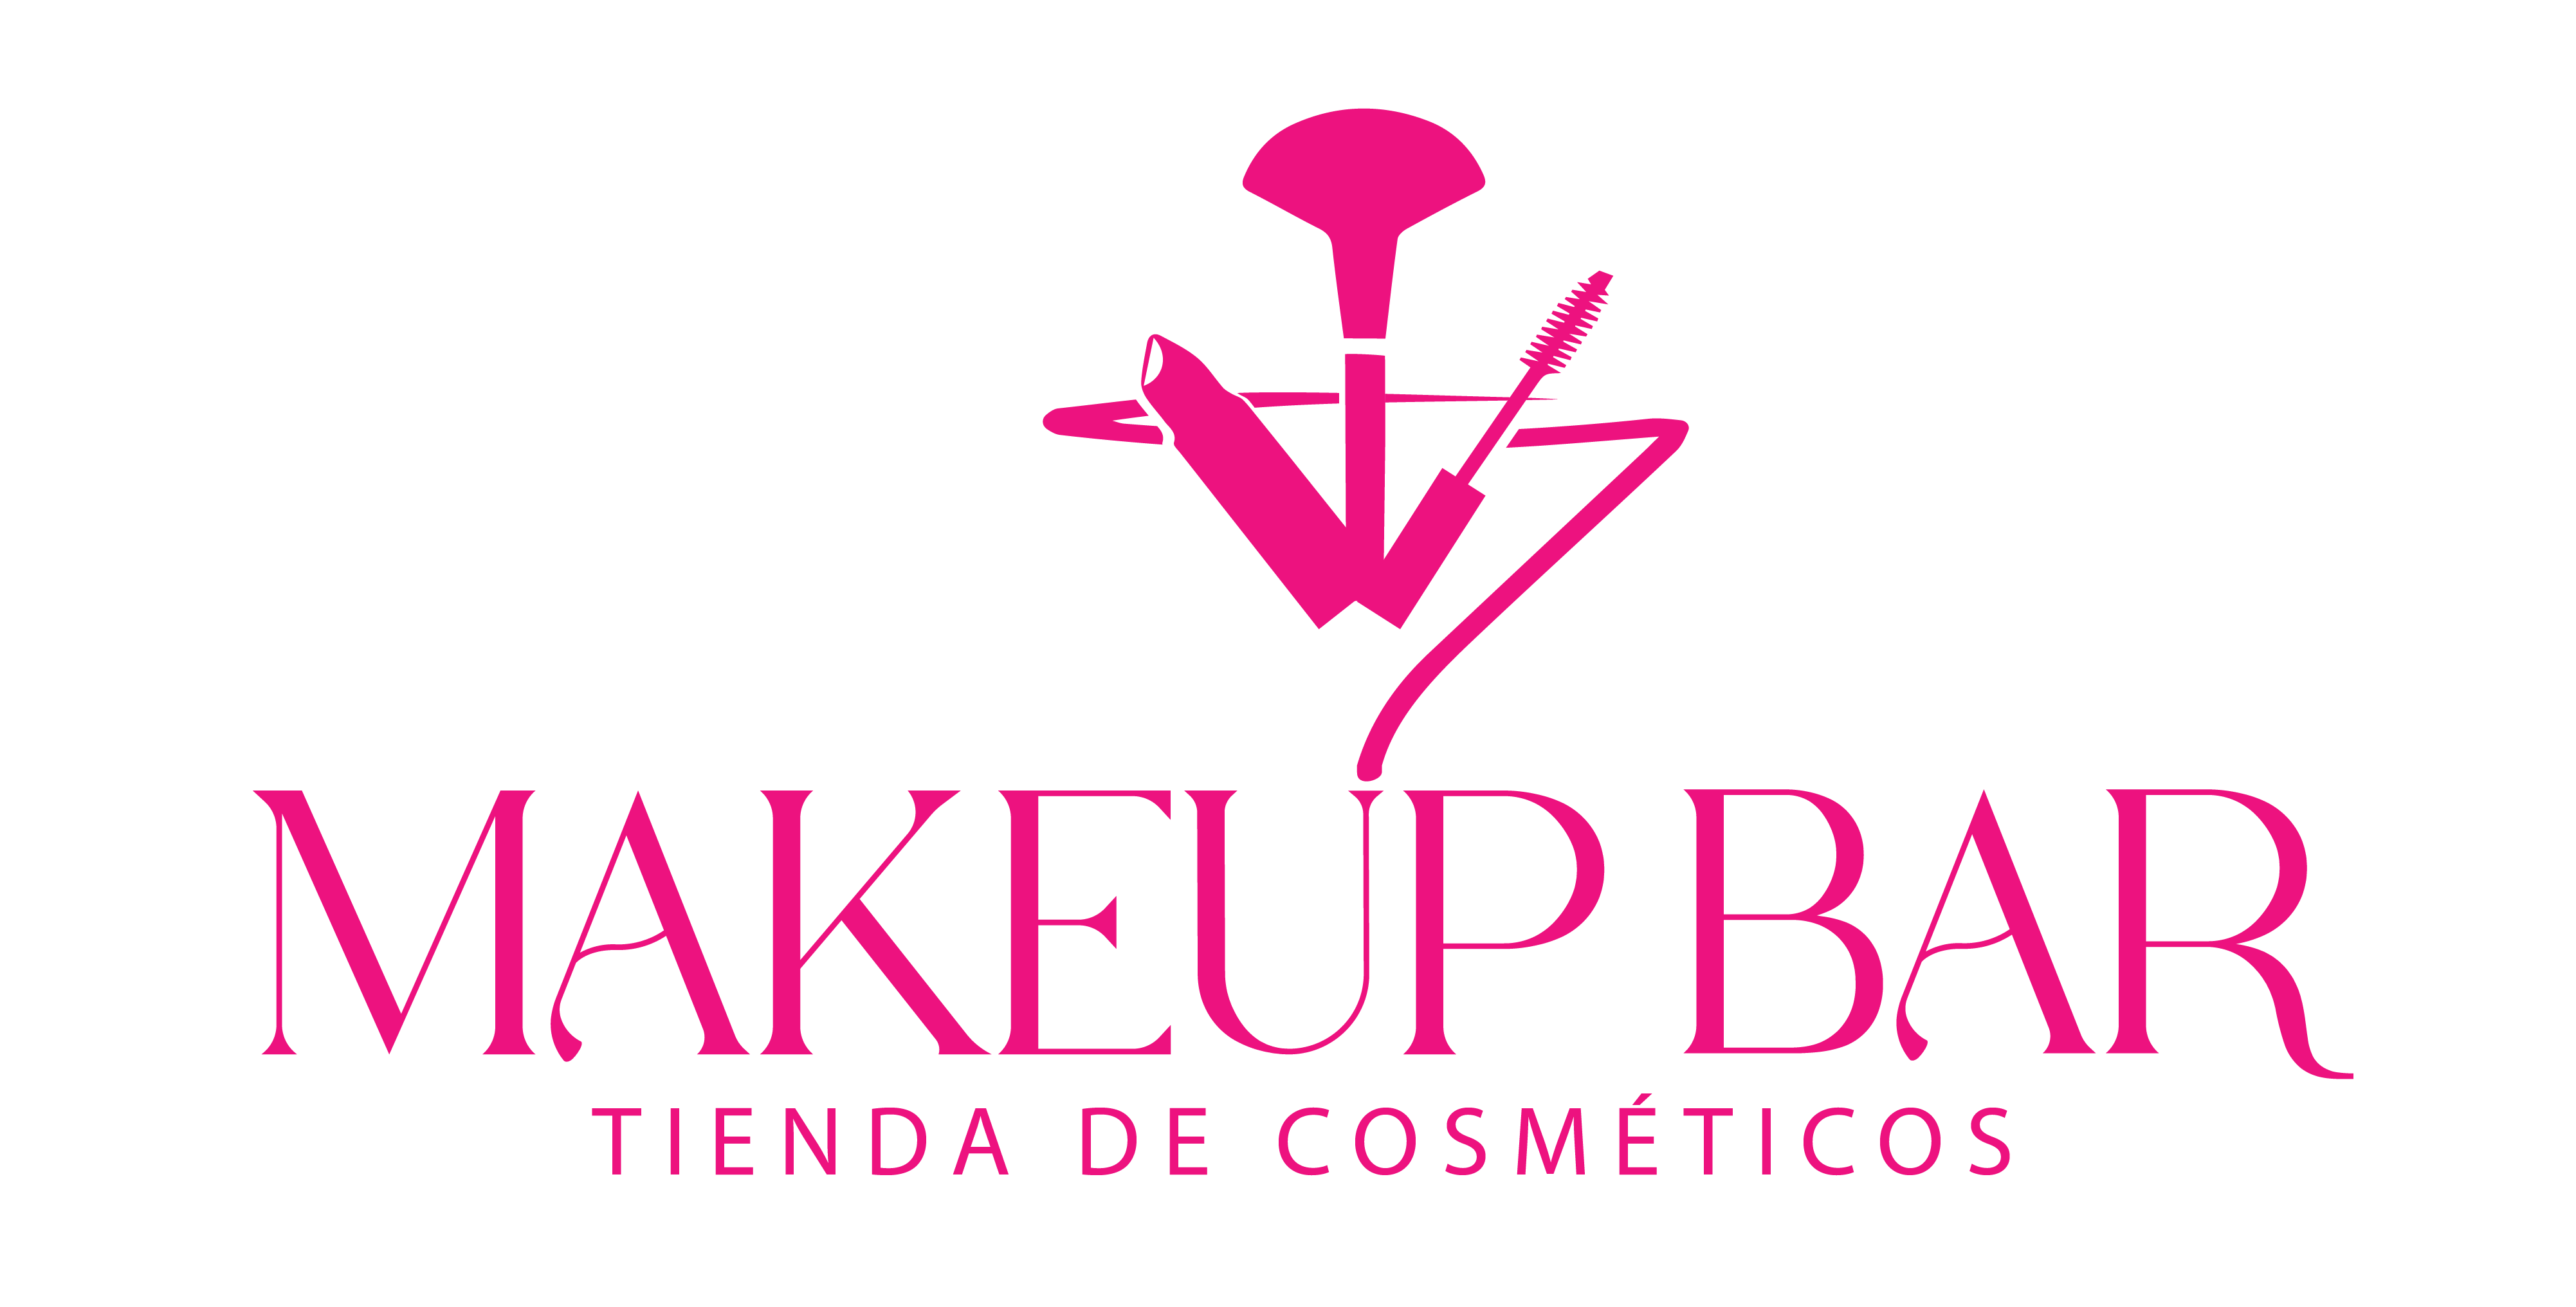 Makeup Bar